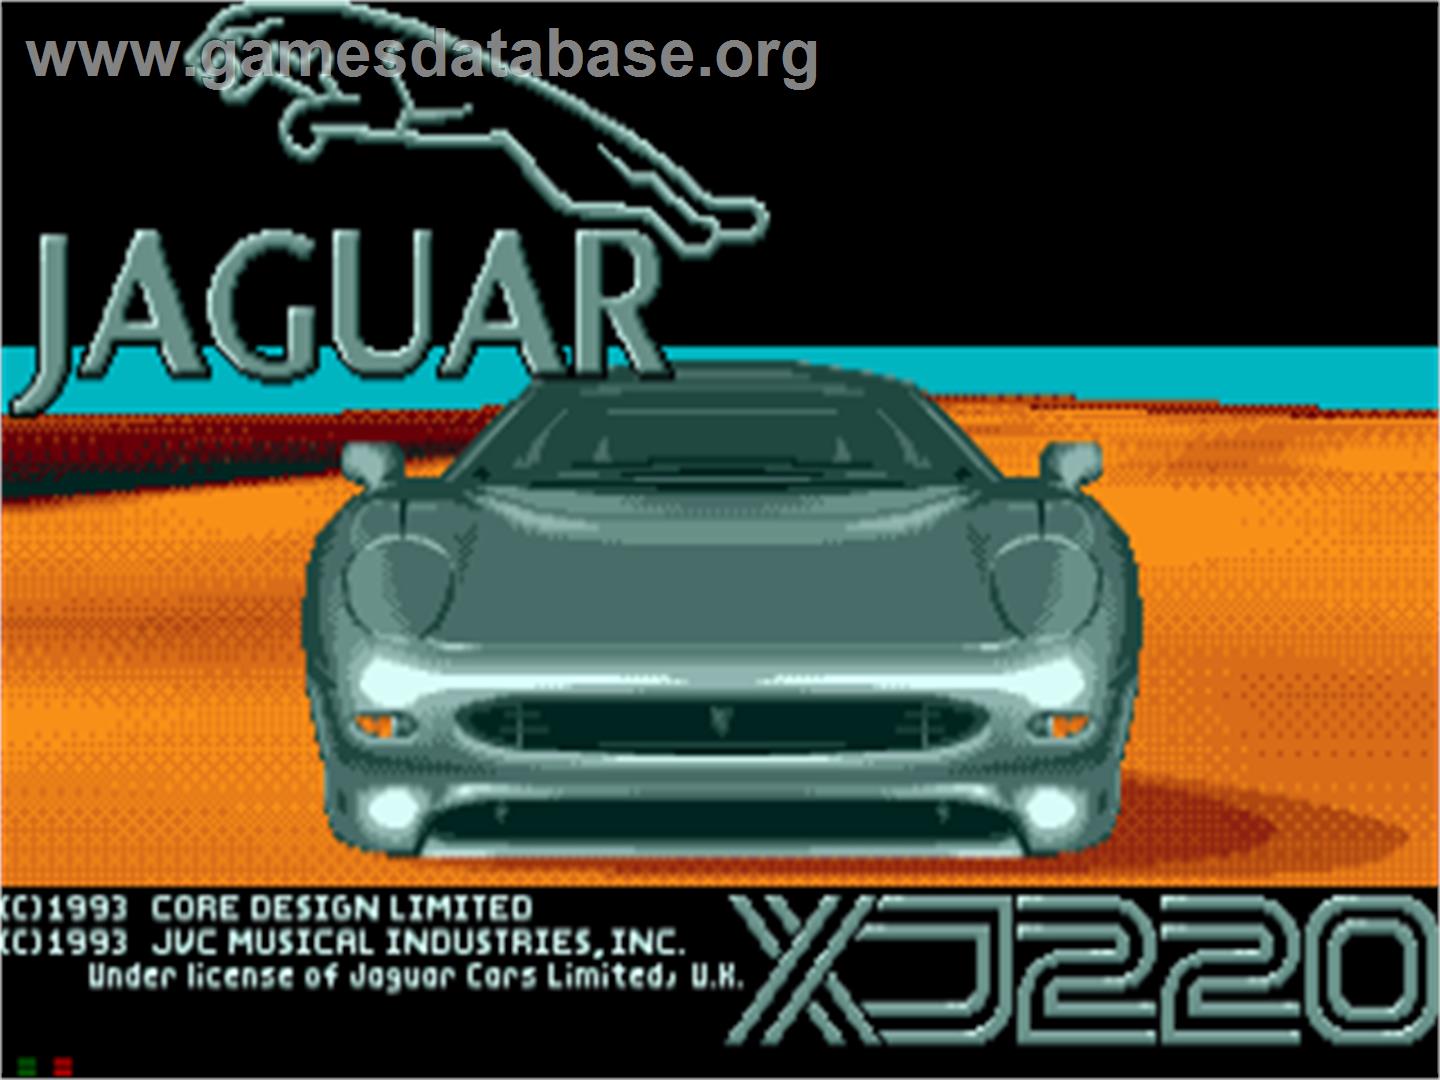 Jaguar XJ220 - Sega CD - Artwork - Title Screen